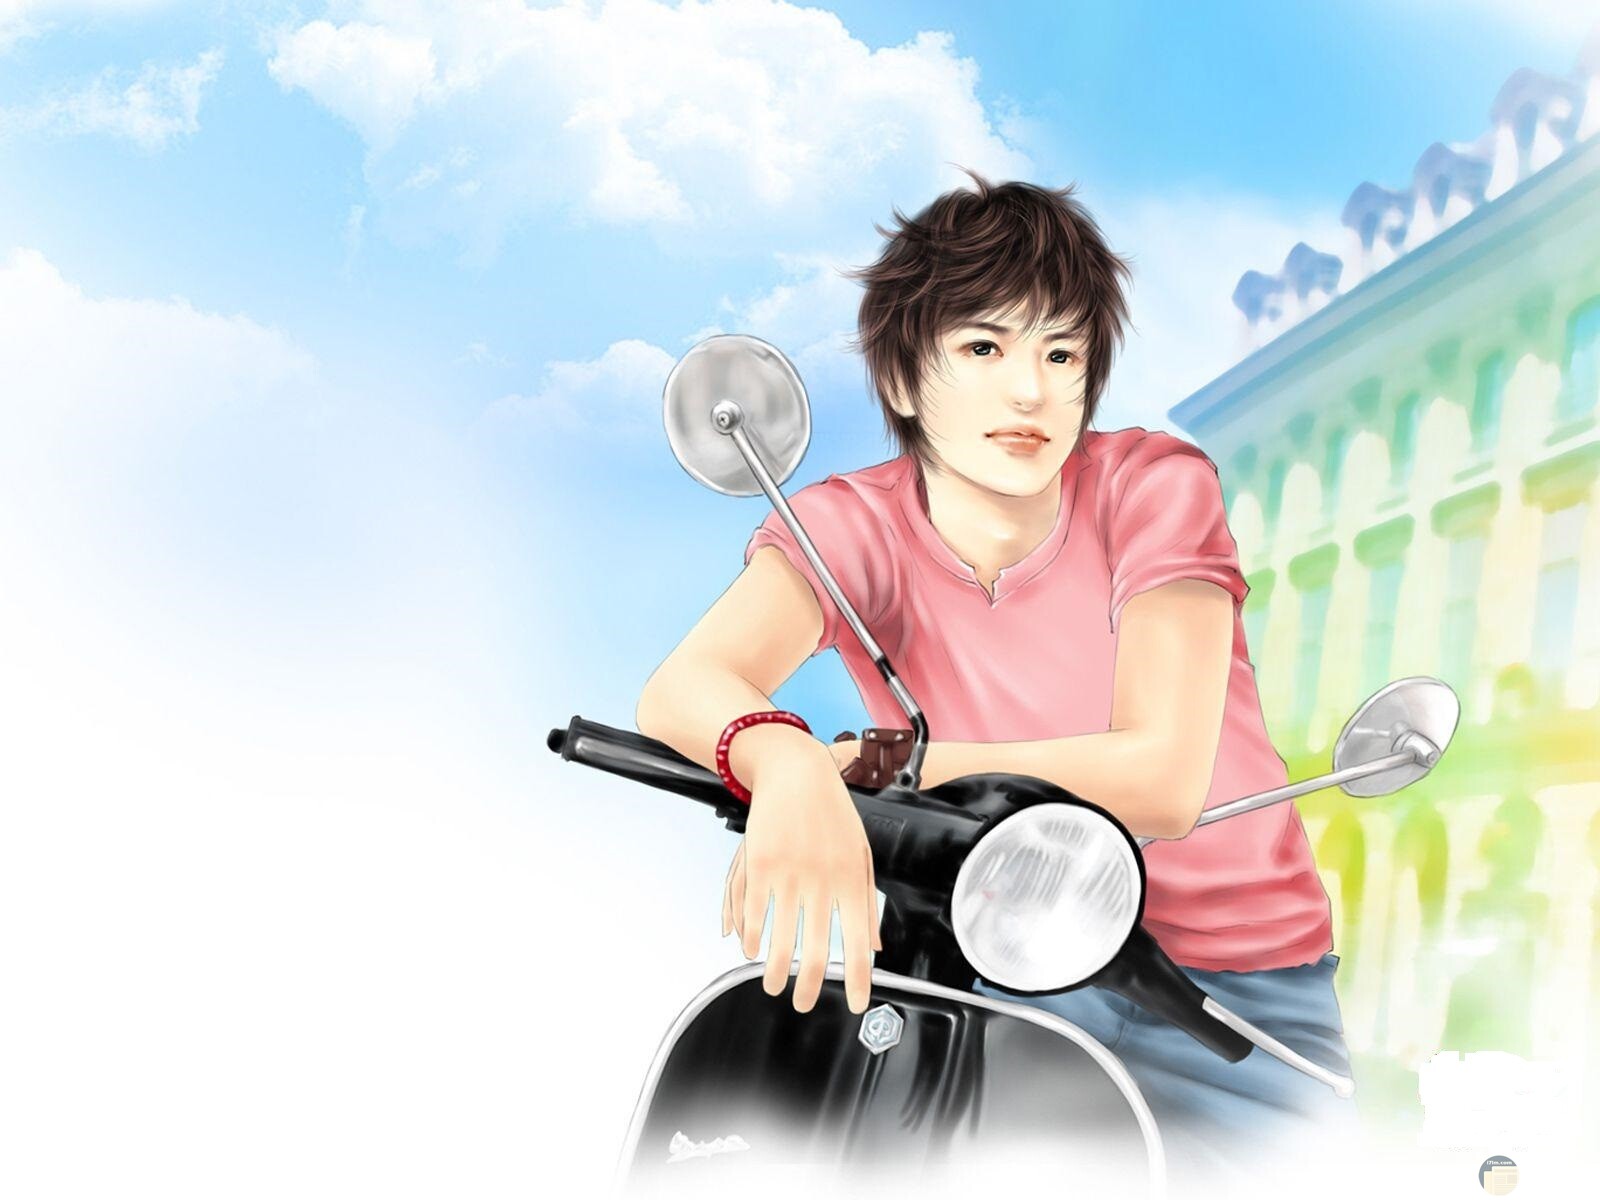 رسمة شاب كول مع دراجة نارية.